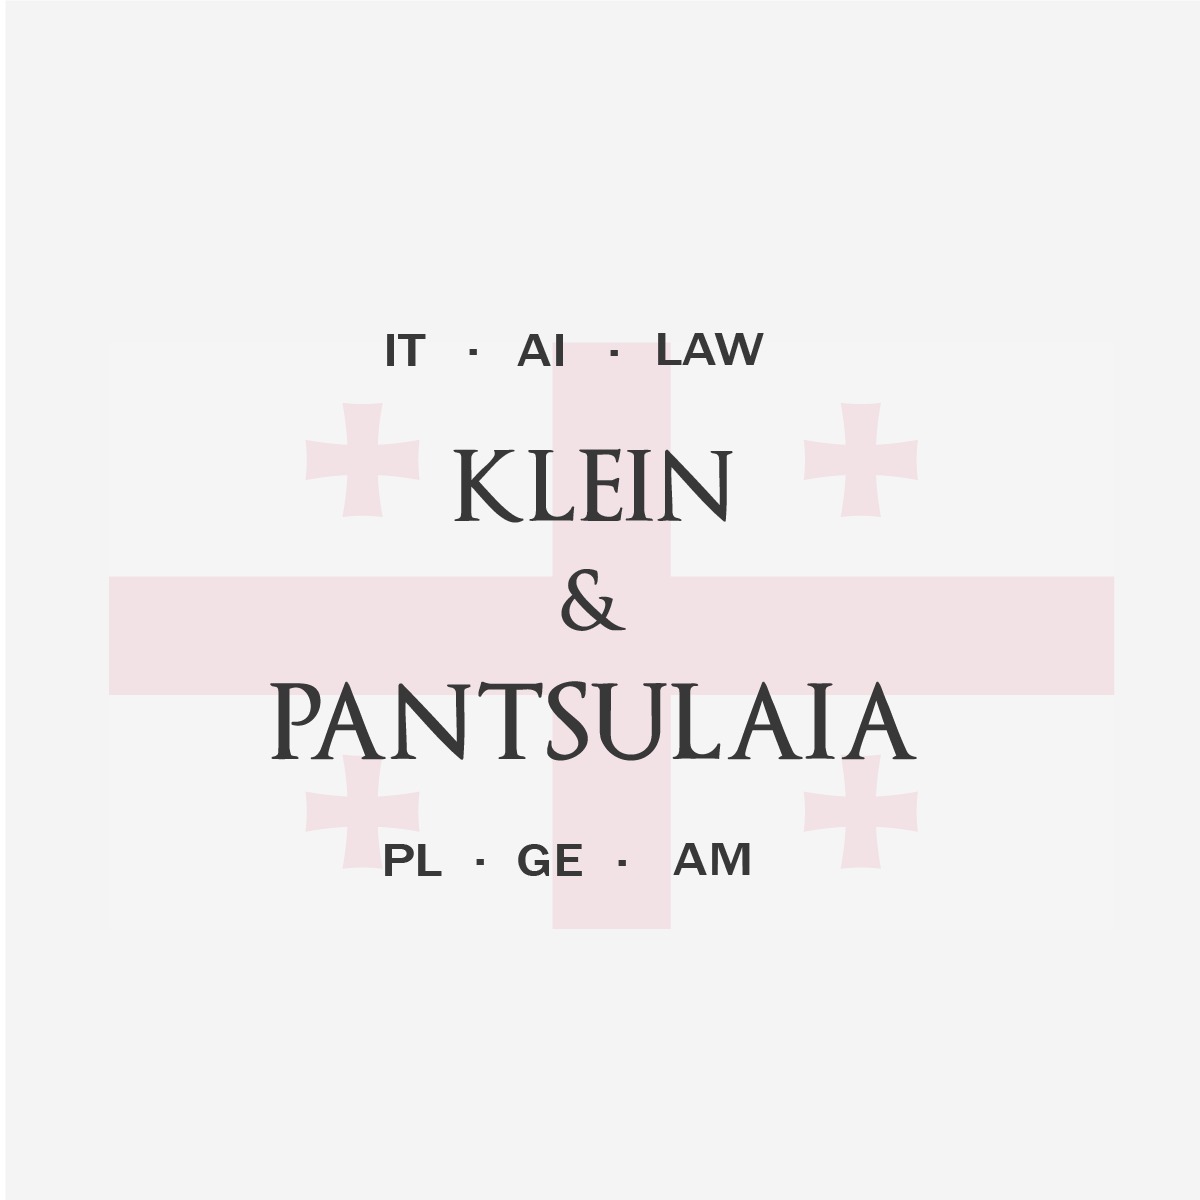 Klein Law Group Georgia